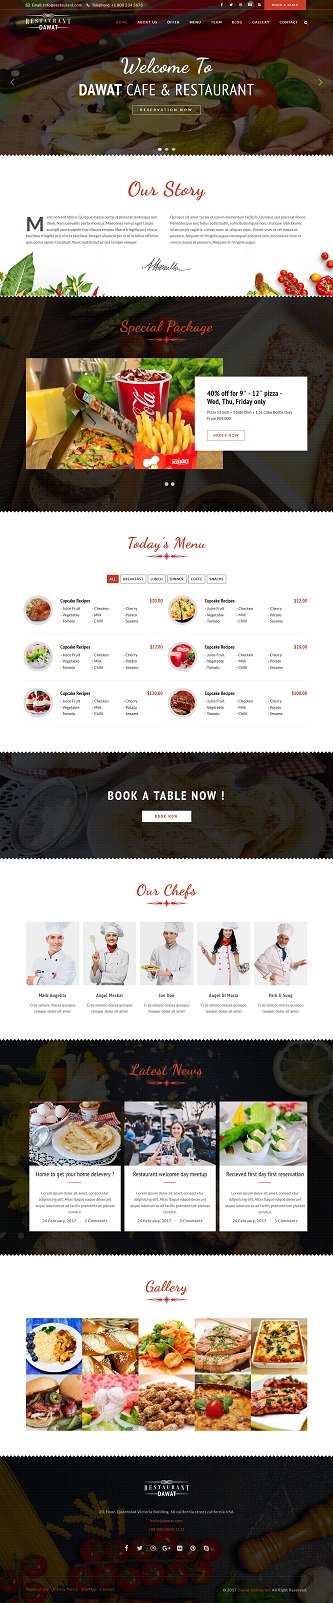 Contoh desain website restaurant